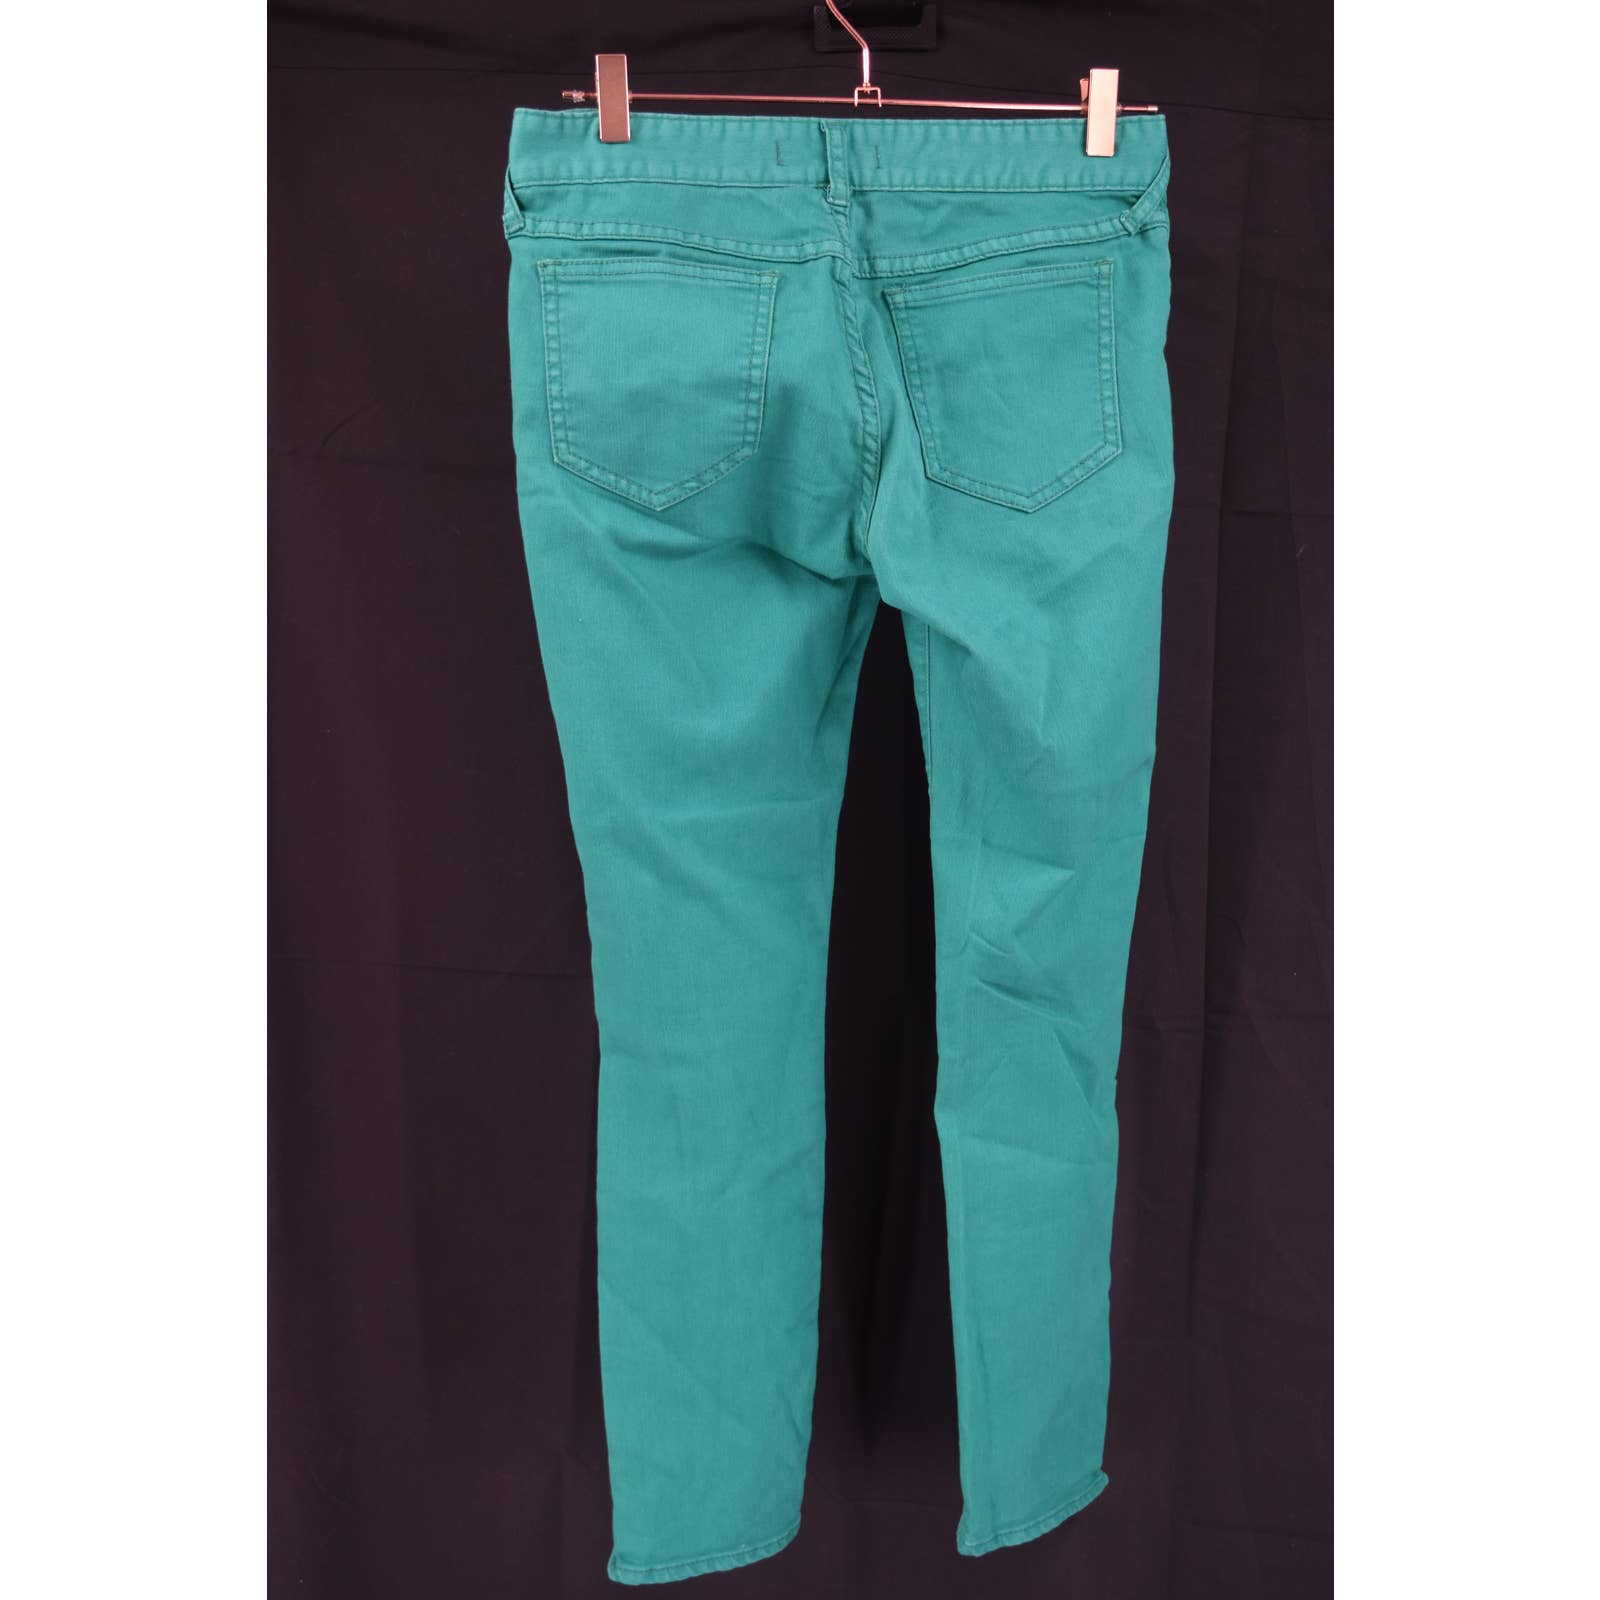 Free People Green Slim Denim Jeans - 28